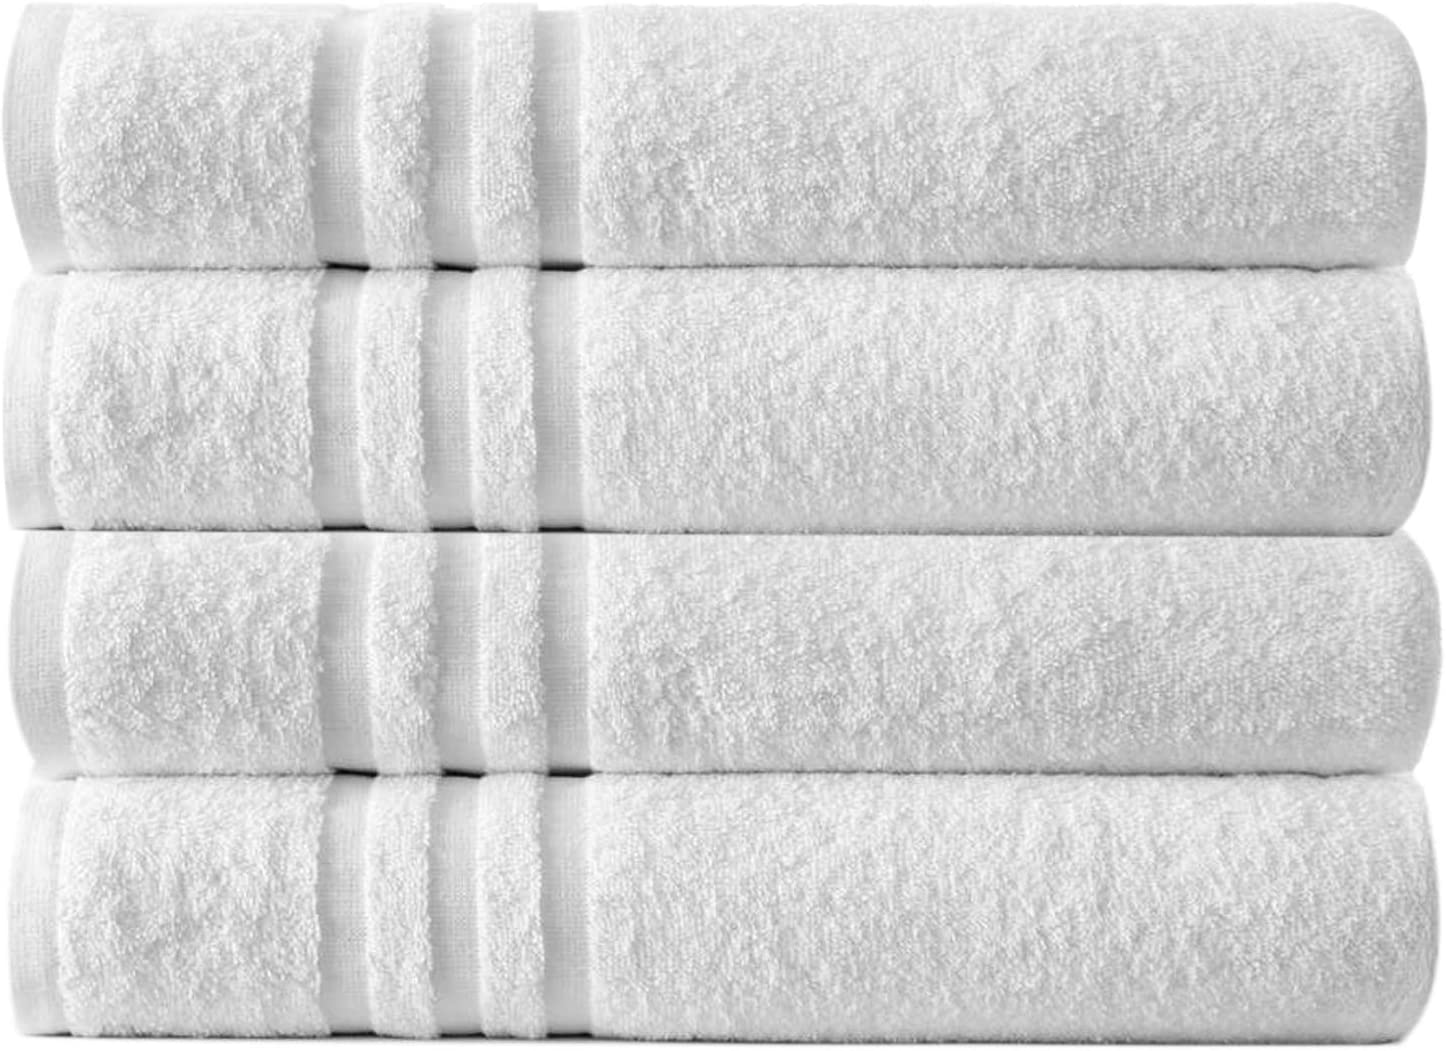 White-Towel-Extra-Large